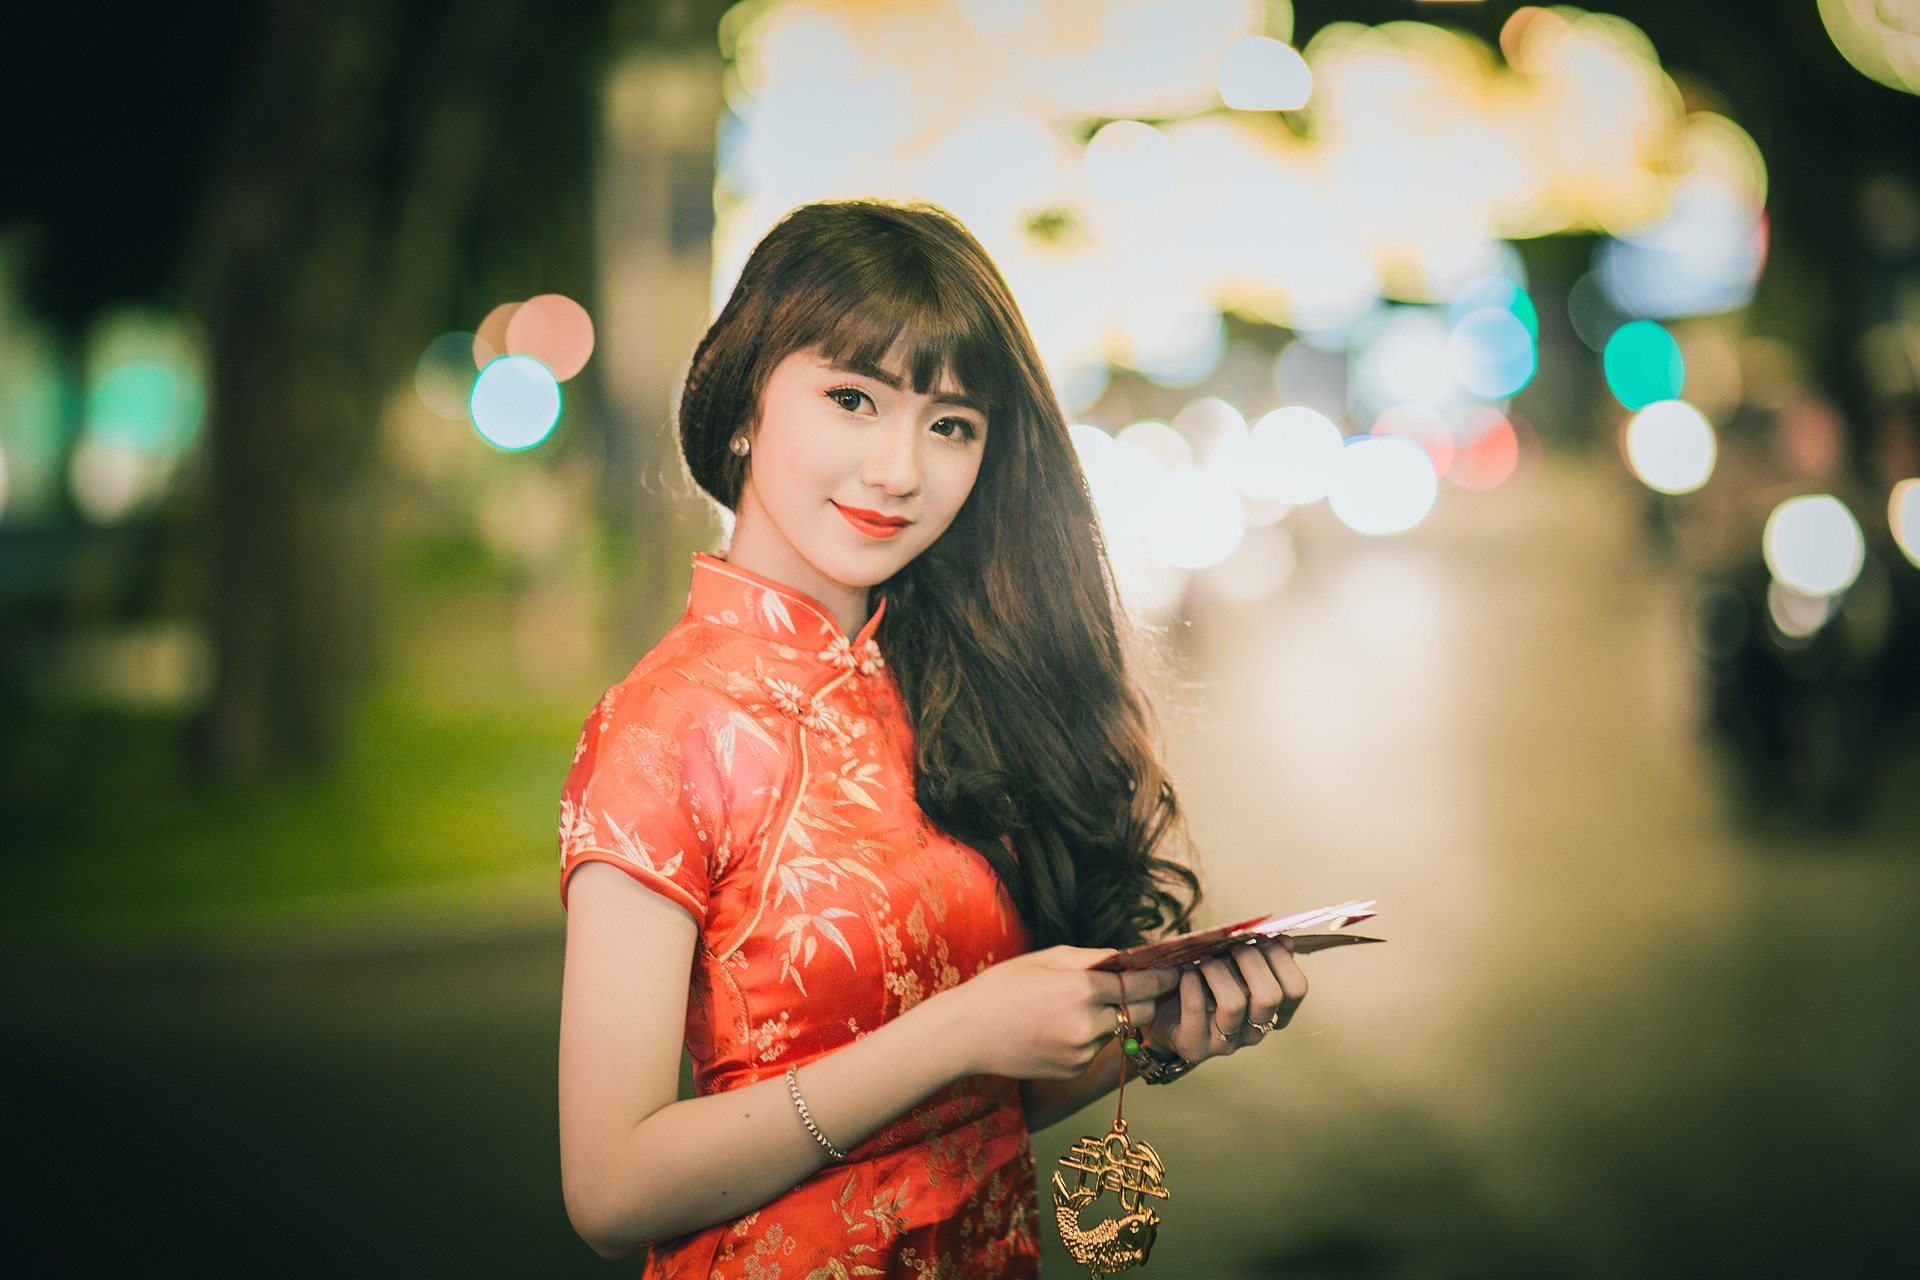 Beautiful Asian Girl Wallpaper 1920x1280p - White Girl In Qipao - HD Wallpaper 